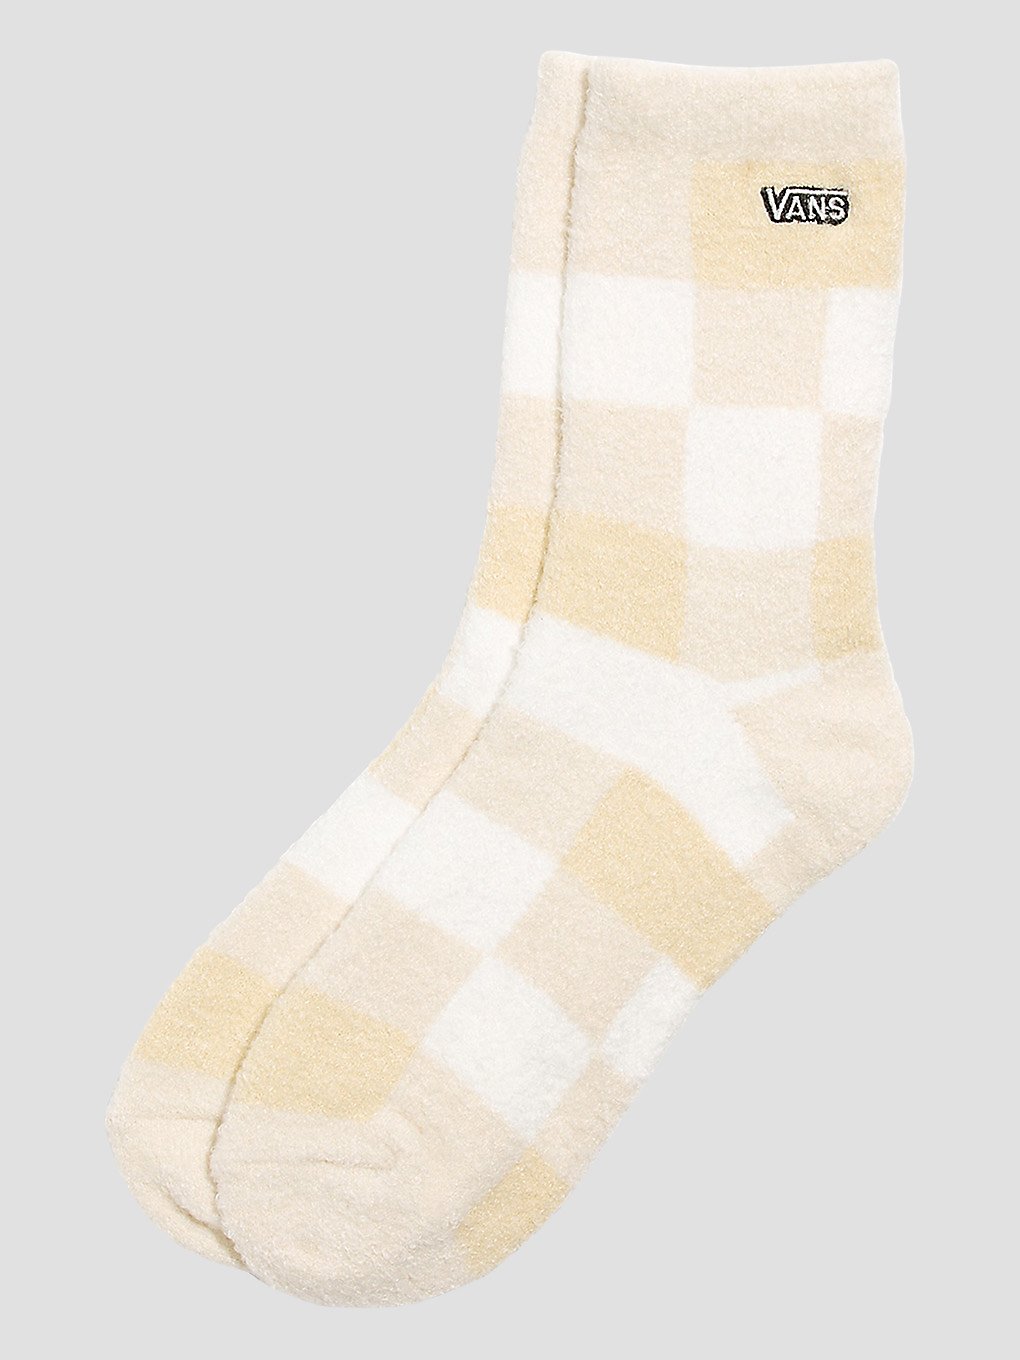 Vans Fuzzy Sock (6.5-10) Socken turtledove kaufen